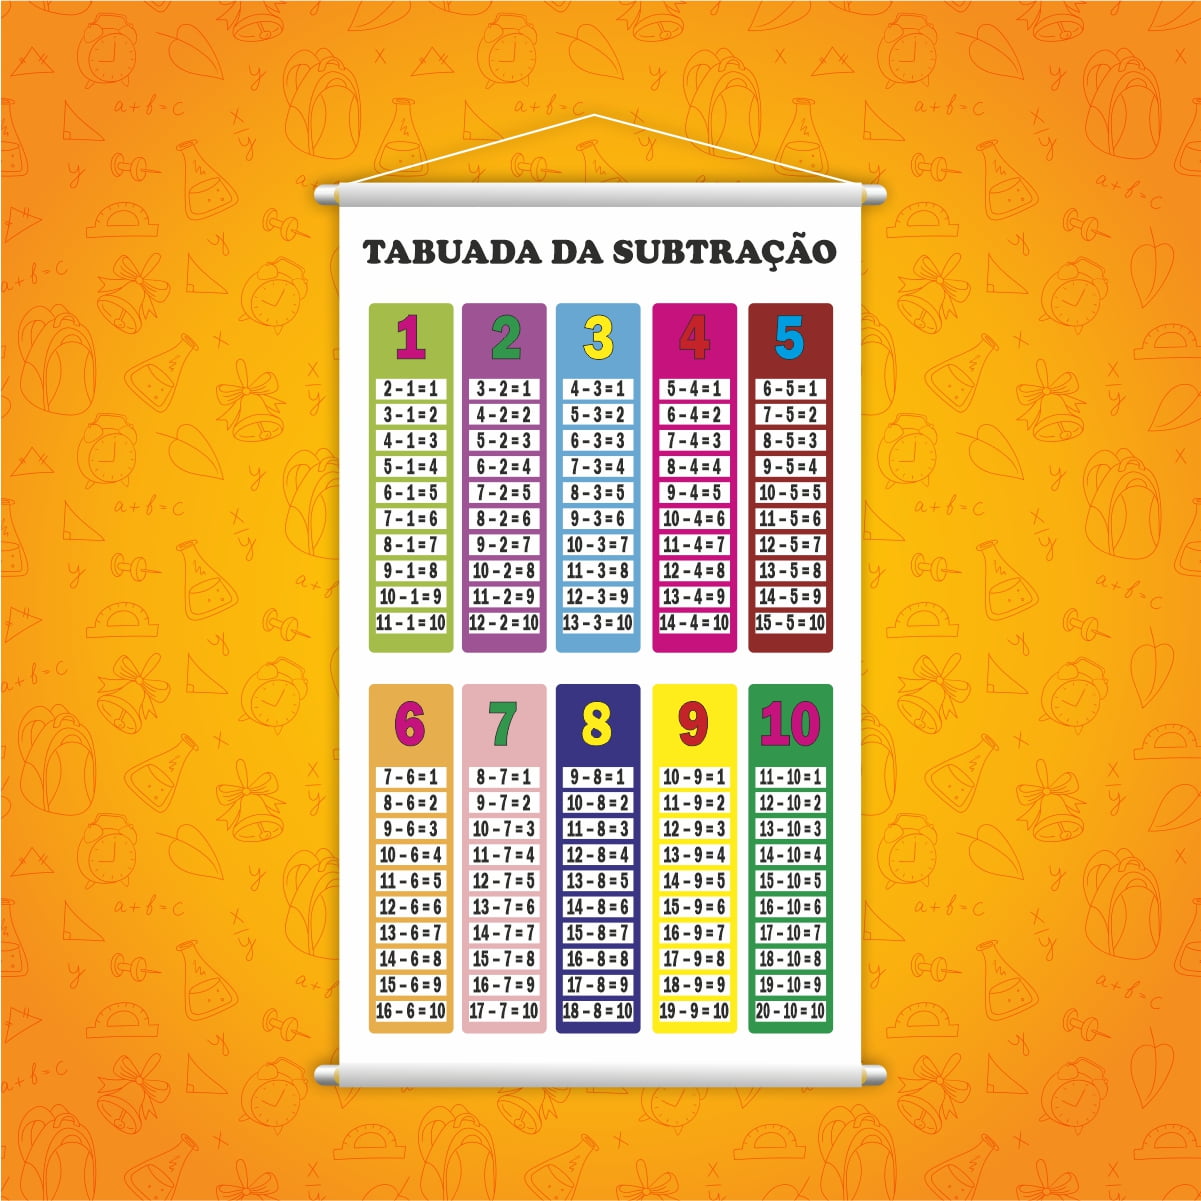 Banner Tabuada Da Subtração Colorida - BRINKSUL  Imparare le tabelline,  Matematica per bambini, Tabelline